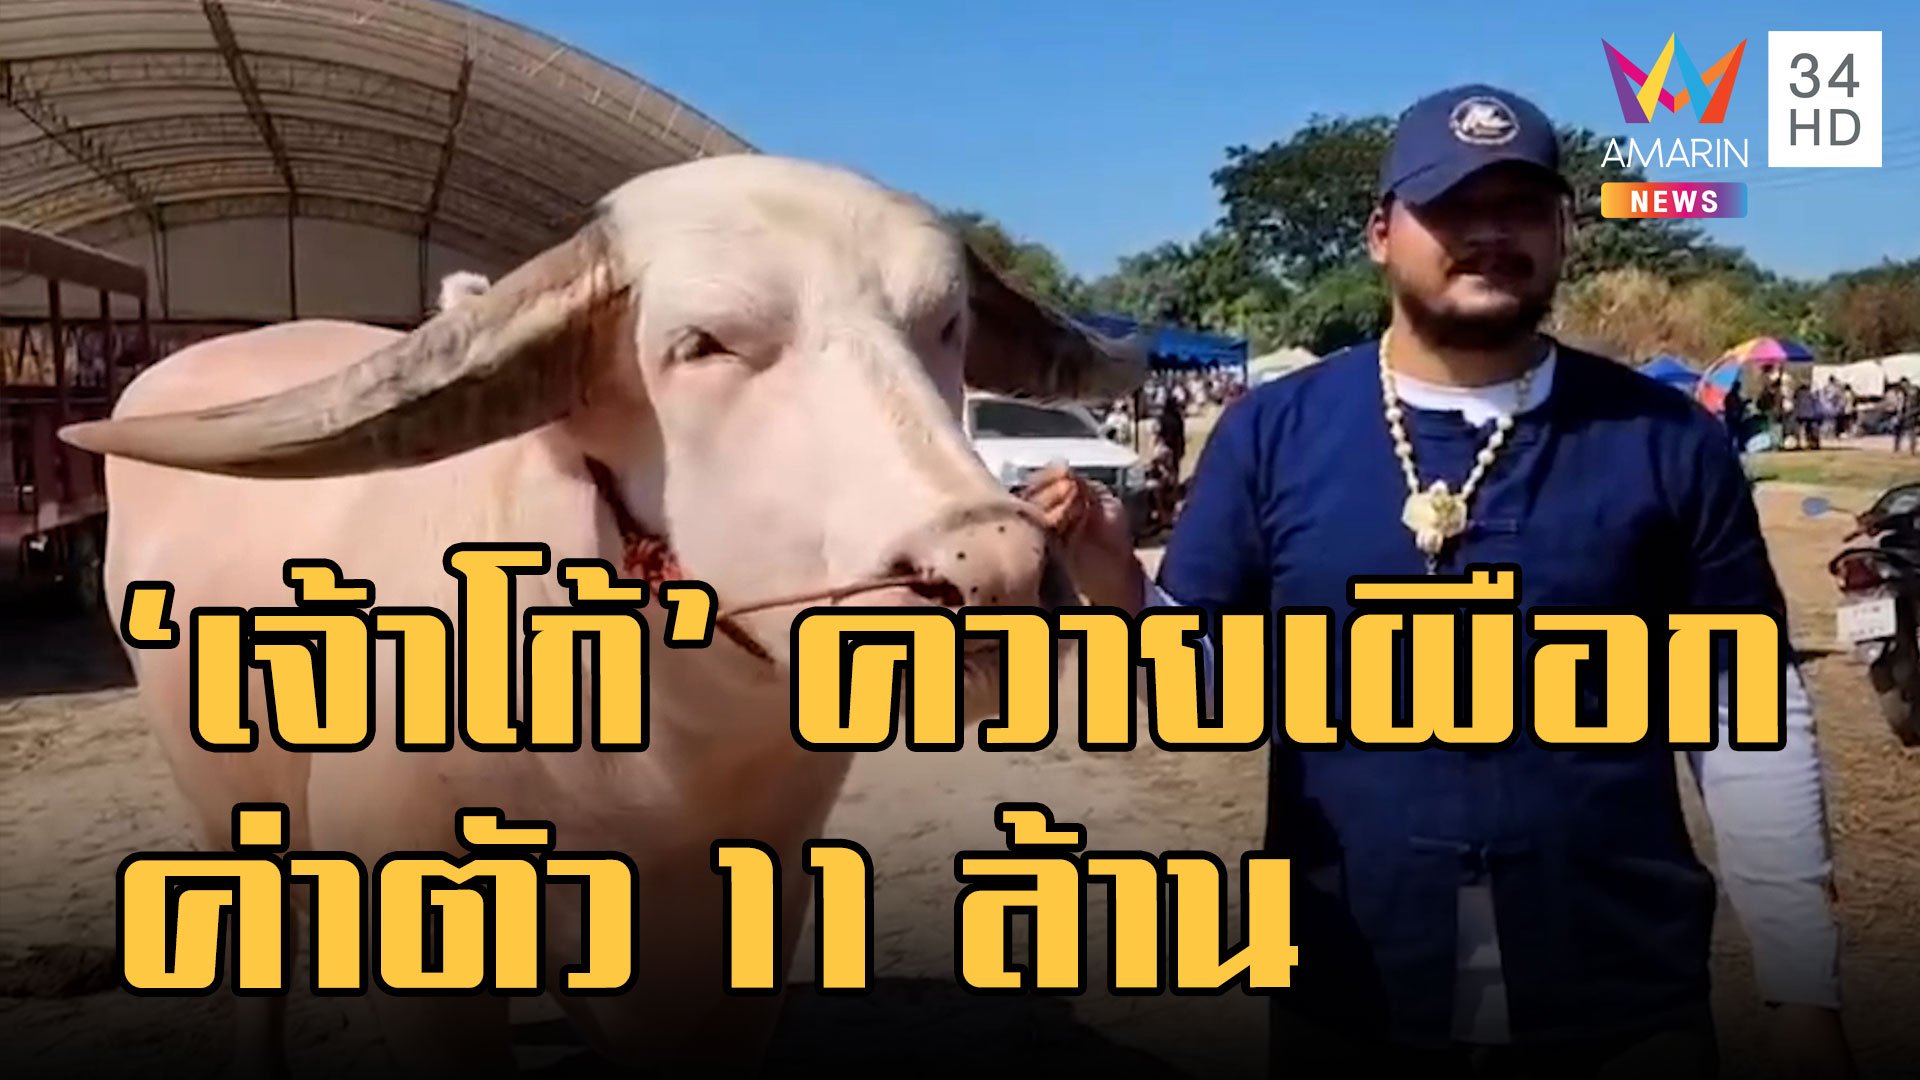 "โก้ เมืองเพชร" ควายเผือกค่าตัว 11 ล้าน อันดับท็อปเมืองไทย | ข่าวอรุณอมรินทร์ | 31 ต.ค. 65 | AMARIN TVHD34